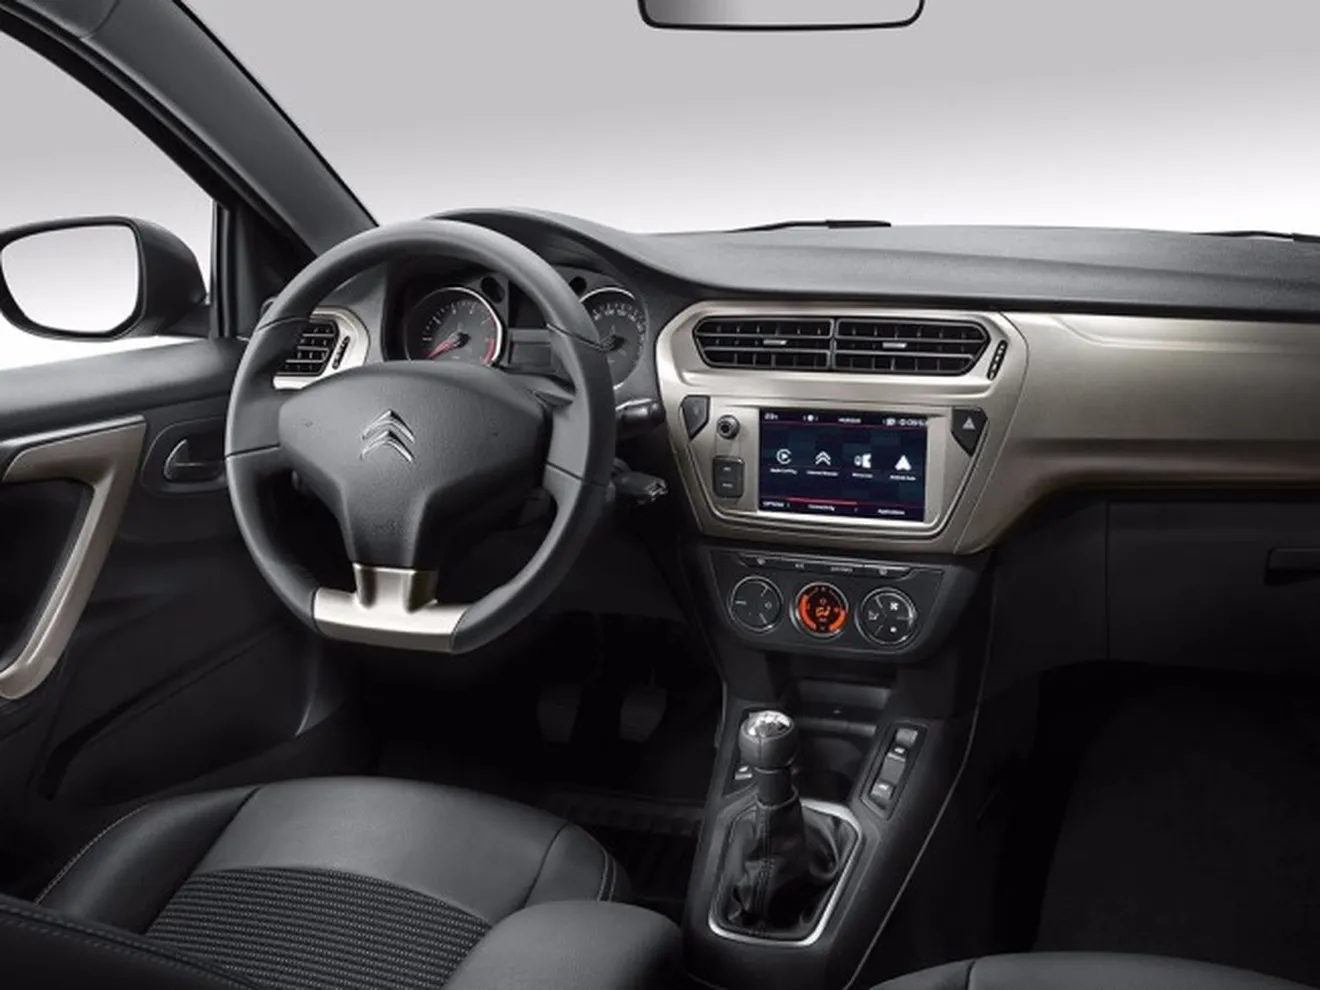 Citroën C-Elysée 2017 - interior